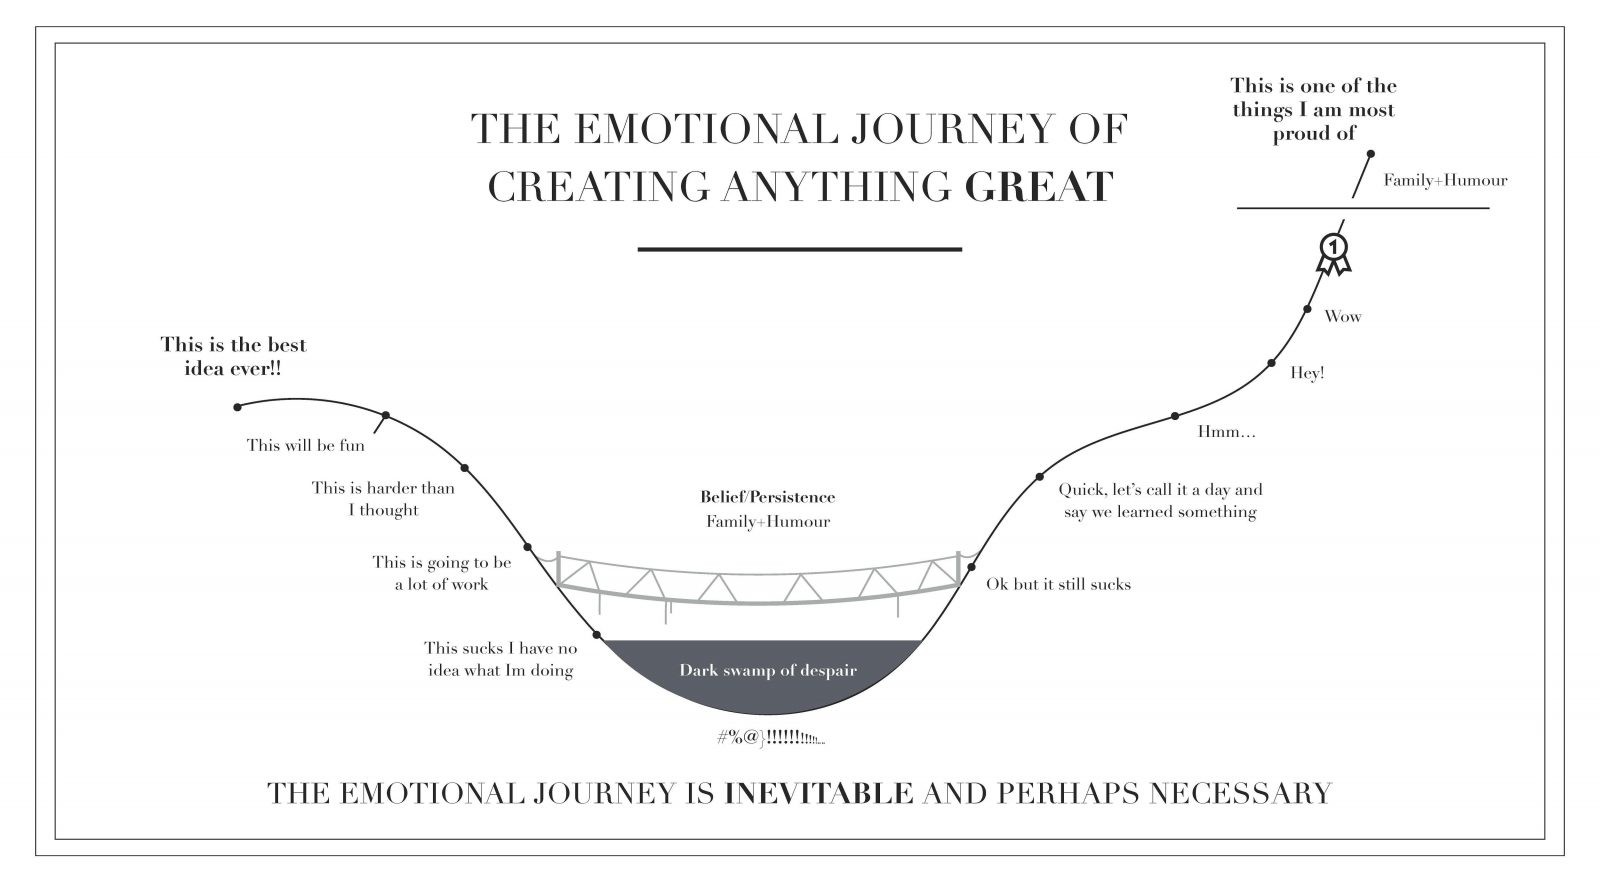 a jornada emocional de criar alguma coisa incrível